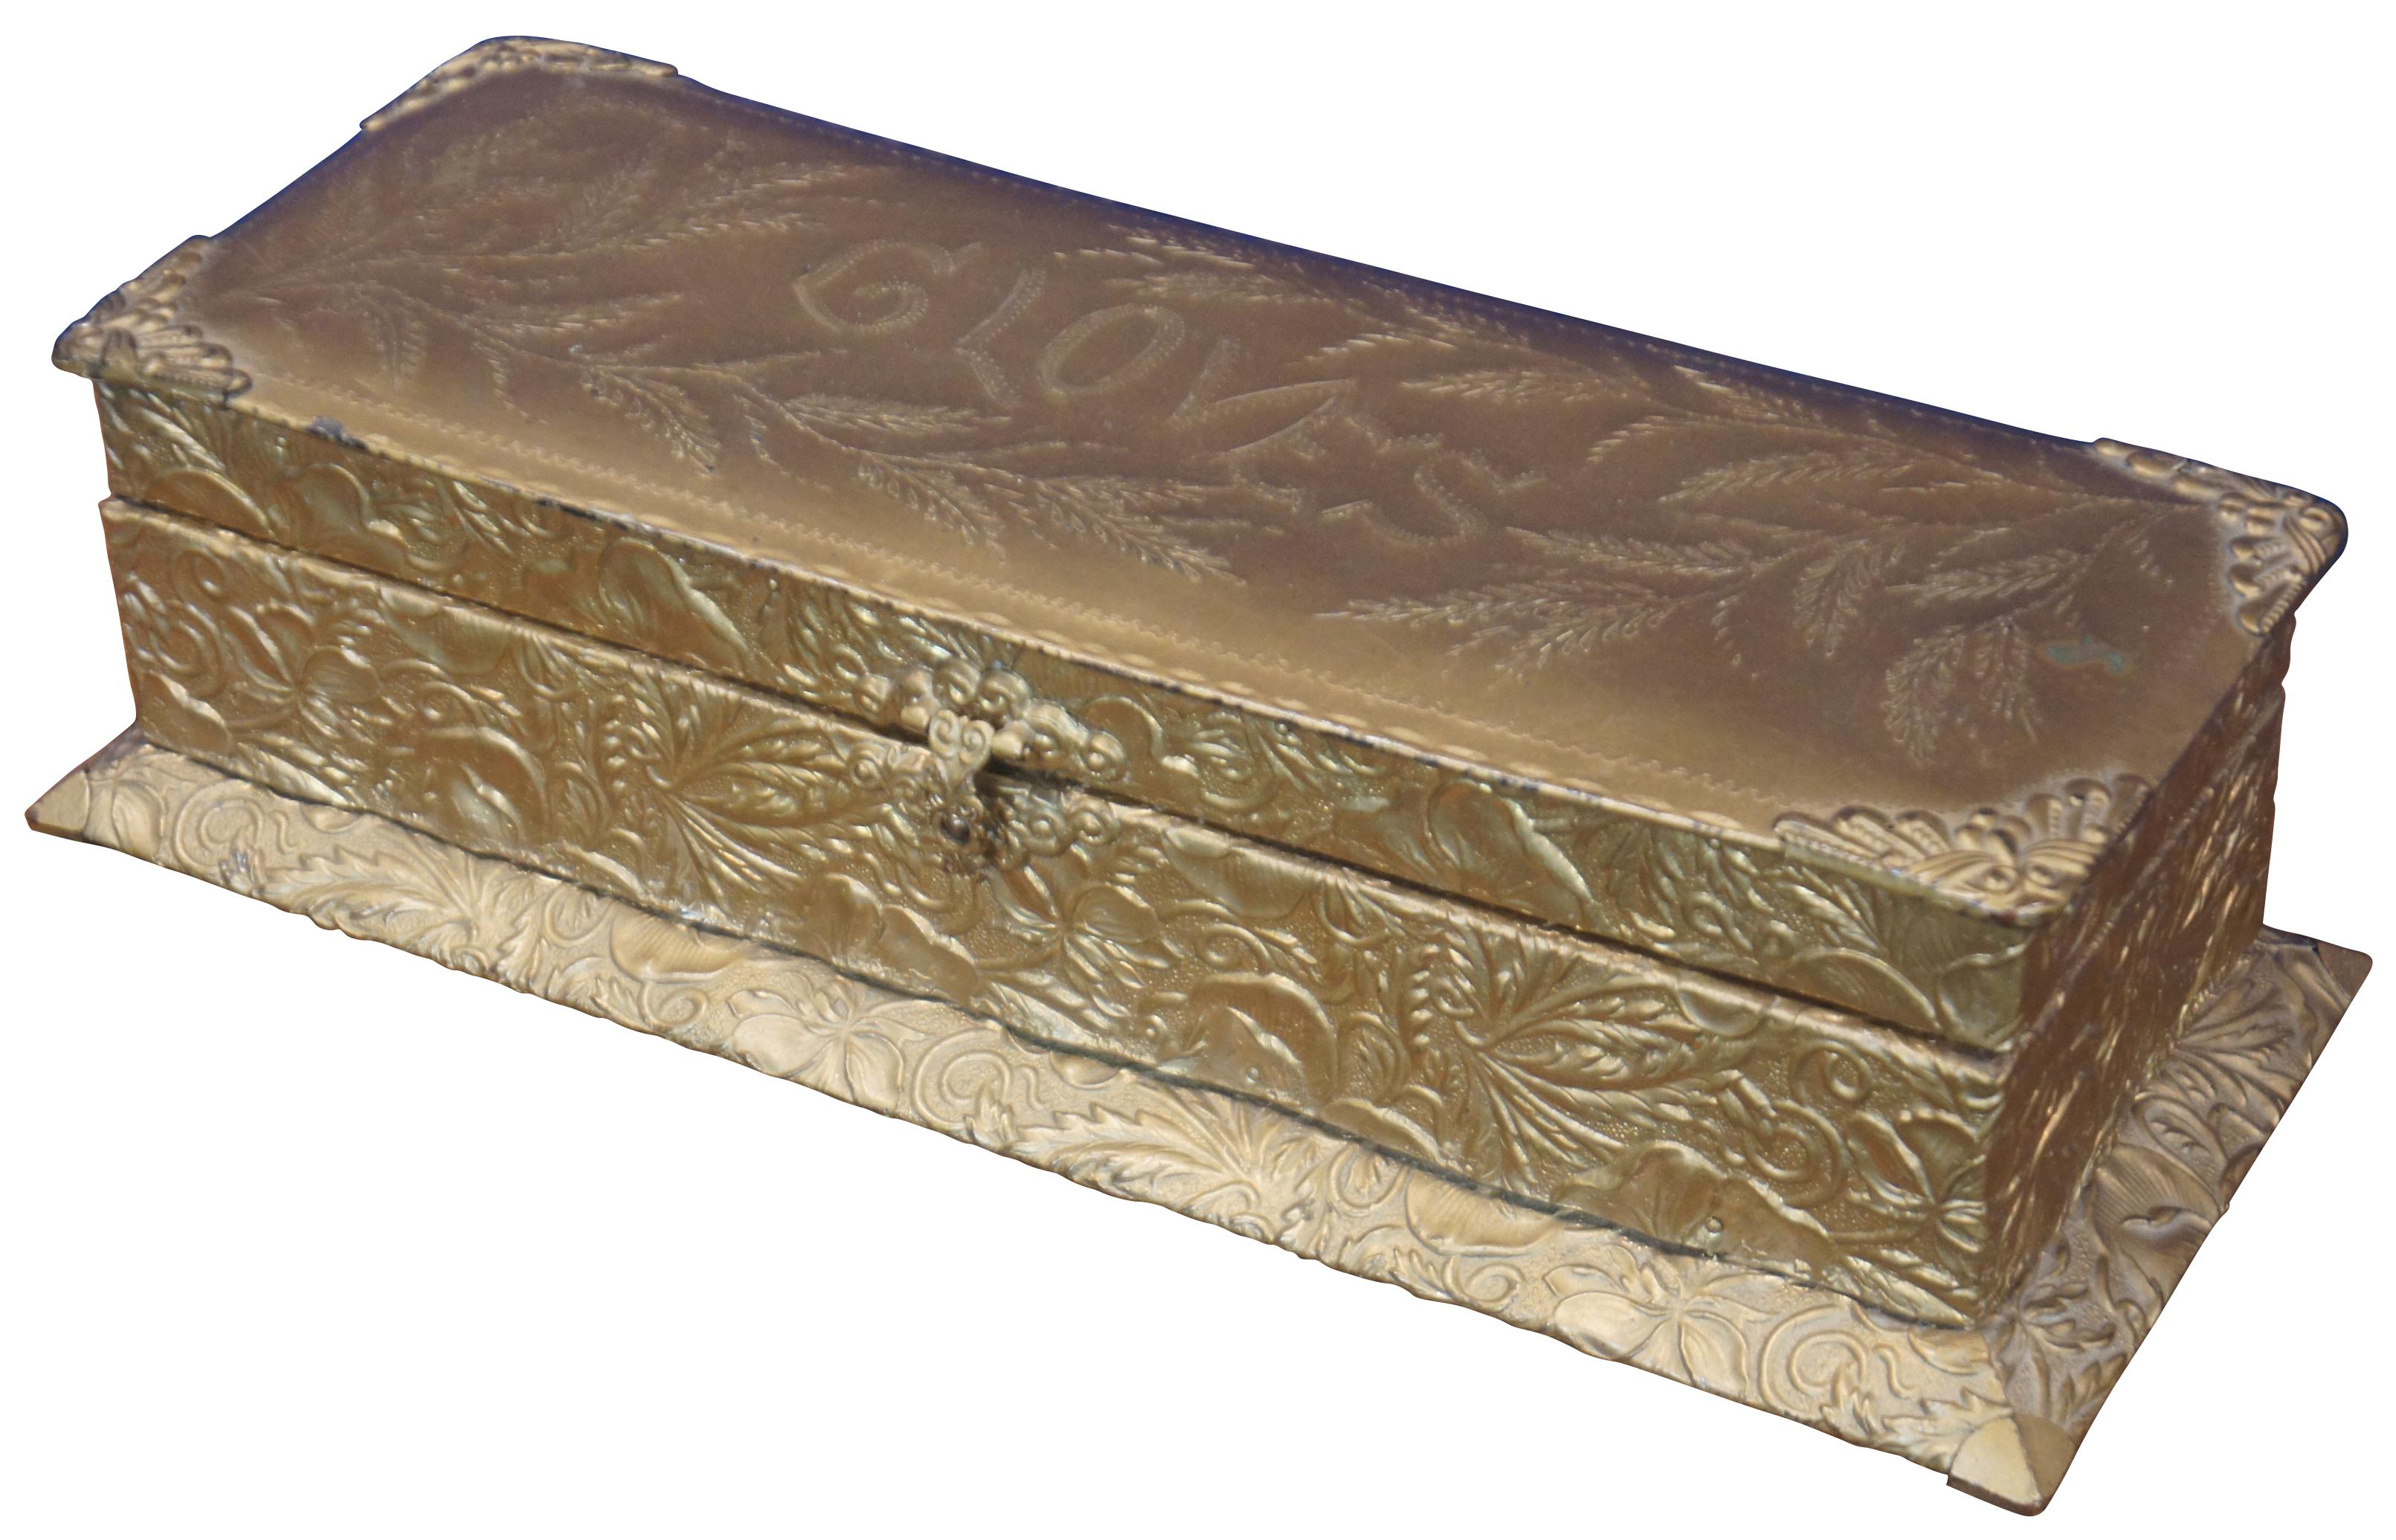 Ancienne boîte à gants, à cercueils, à souvenirs ou à bijoux J&S de style victorien, en bois recouvert de métal gaufré émaillé de couleur or, avec une fine doublure en velours orange. Mesures : 13